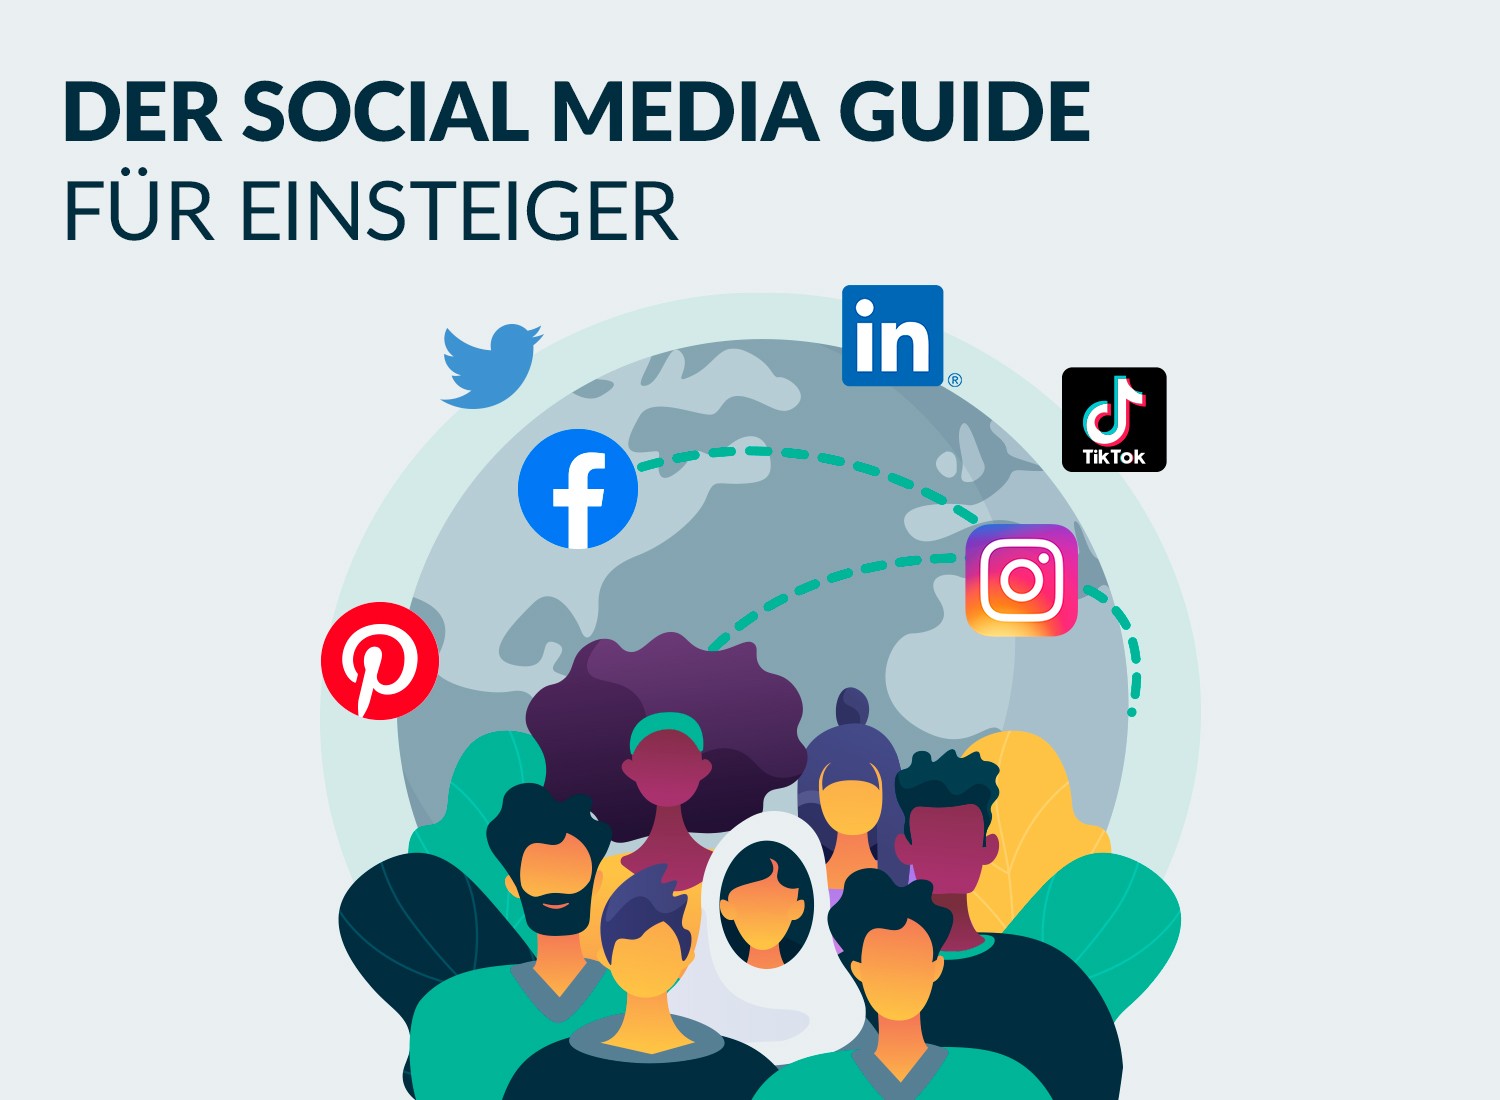 Featured image for “Der Social Media Guide für Einsteiger”